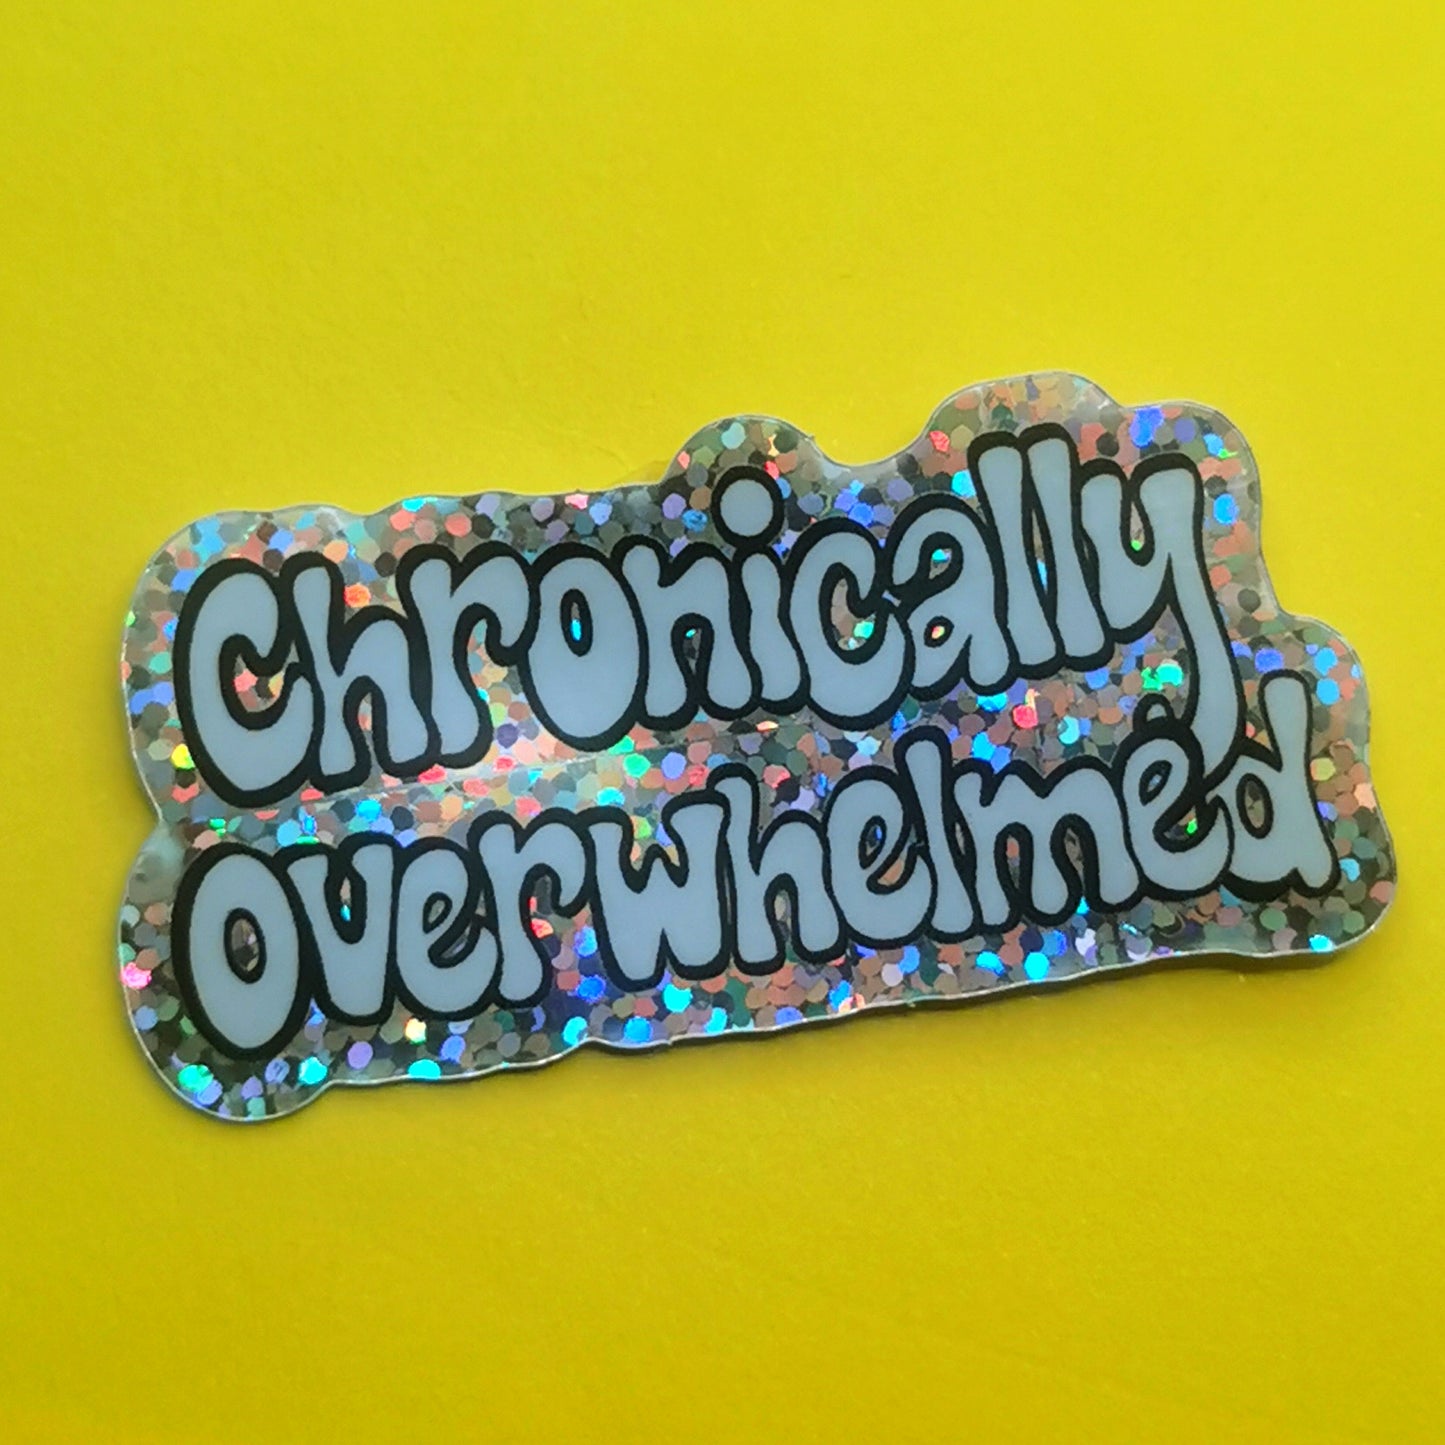 Chronically Overwhelmed - Glitter Sticker